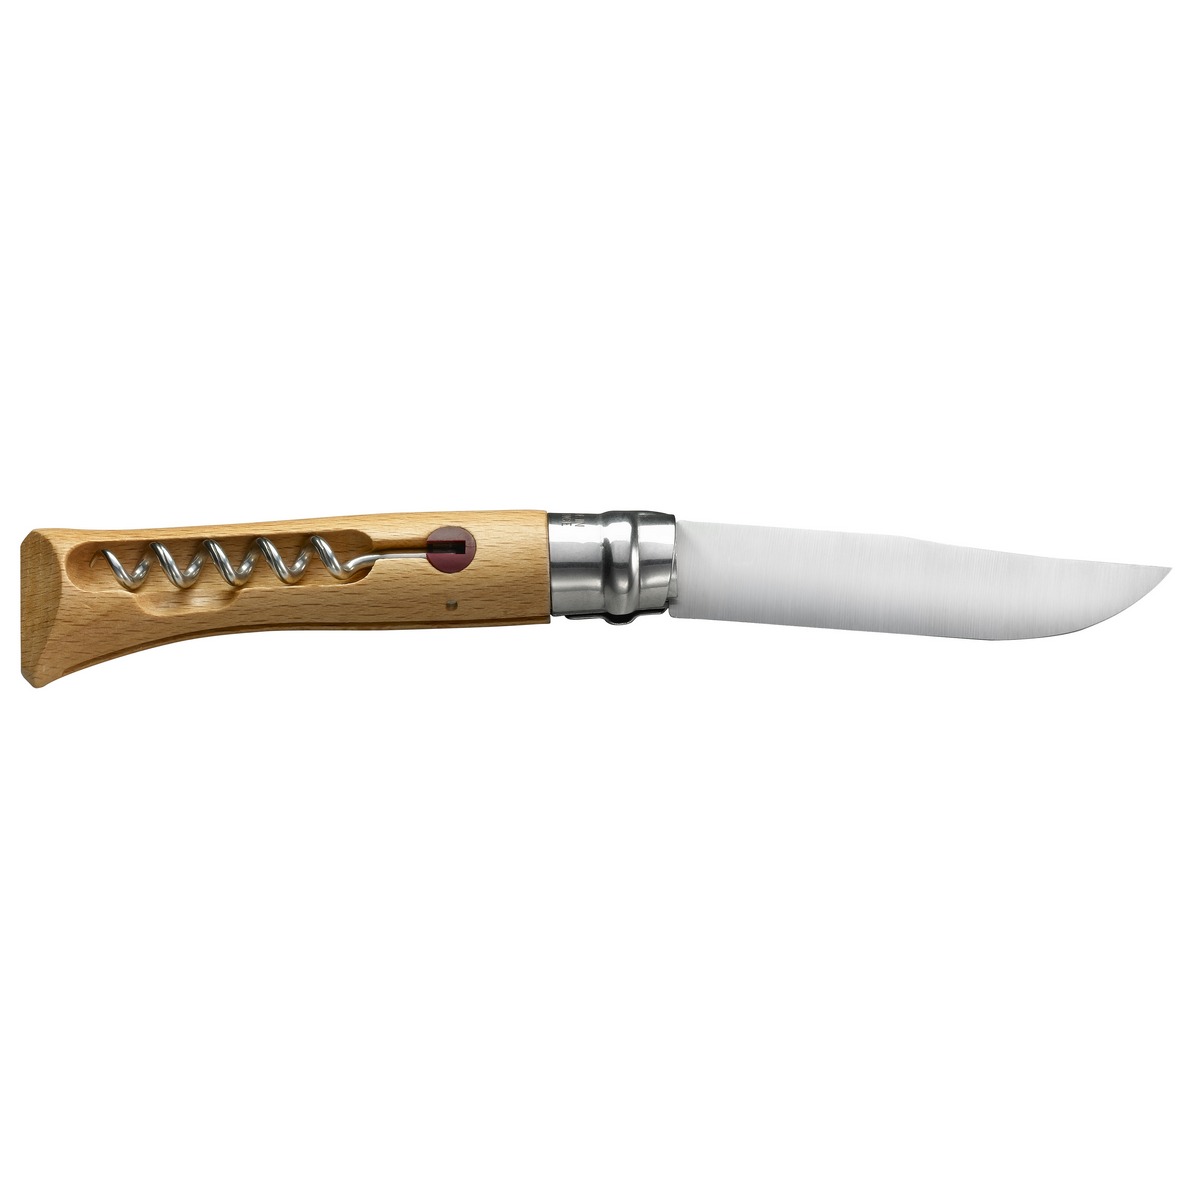 картинка Нож Opinel №10, нержавеющая сталь, рукоять из бука, со штопором, 001410